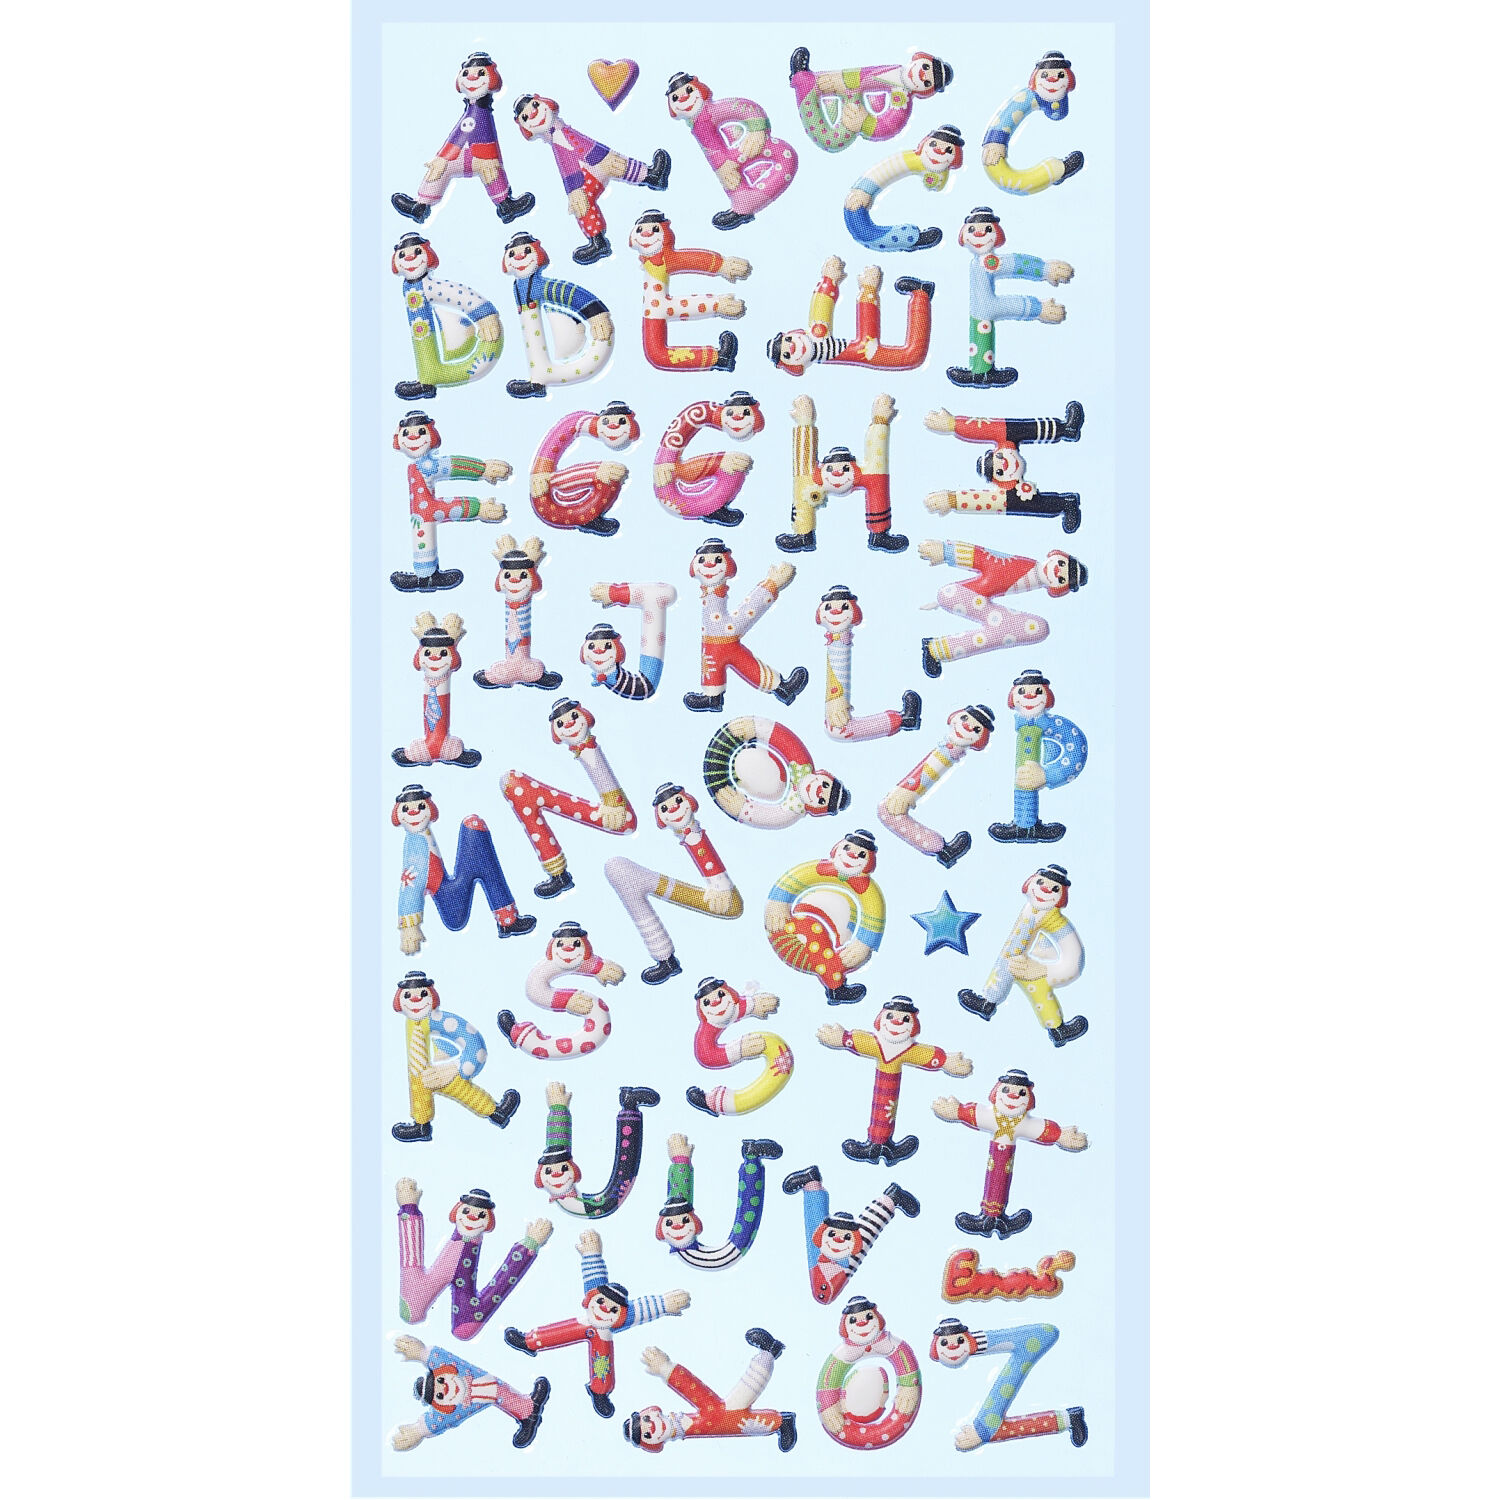 NEU SOFTY 3-D Sticker / Aufkleber, Clown-Buchstaben / Alphabet, 1 Bogen